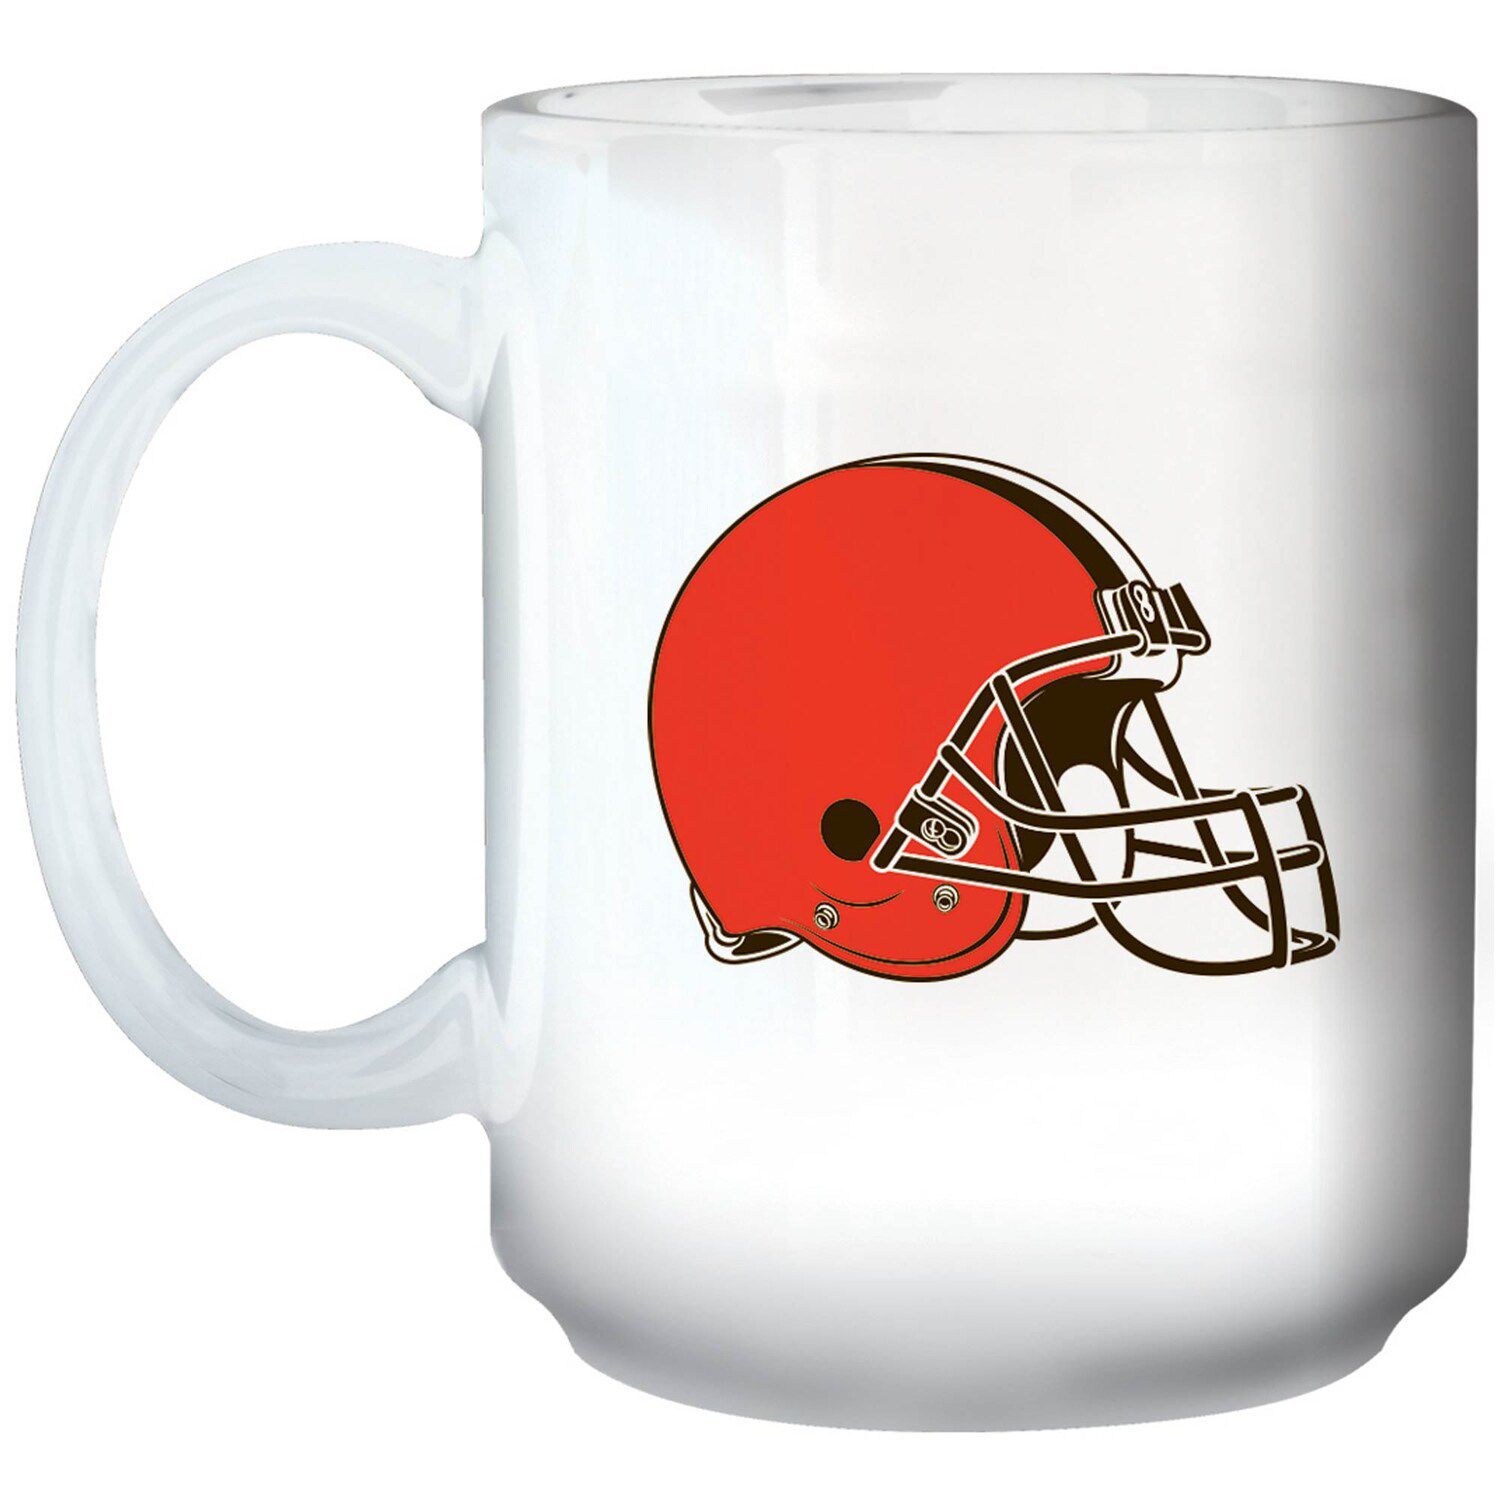 Image for Unbranded Cleveland Browns 15oz. Primary Logo Mug at Kohl's.